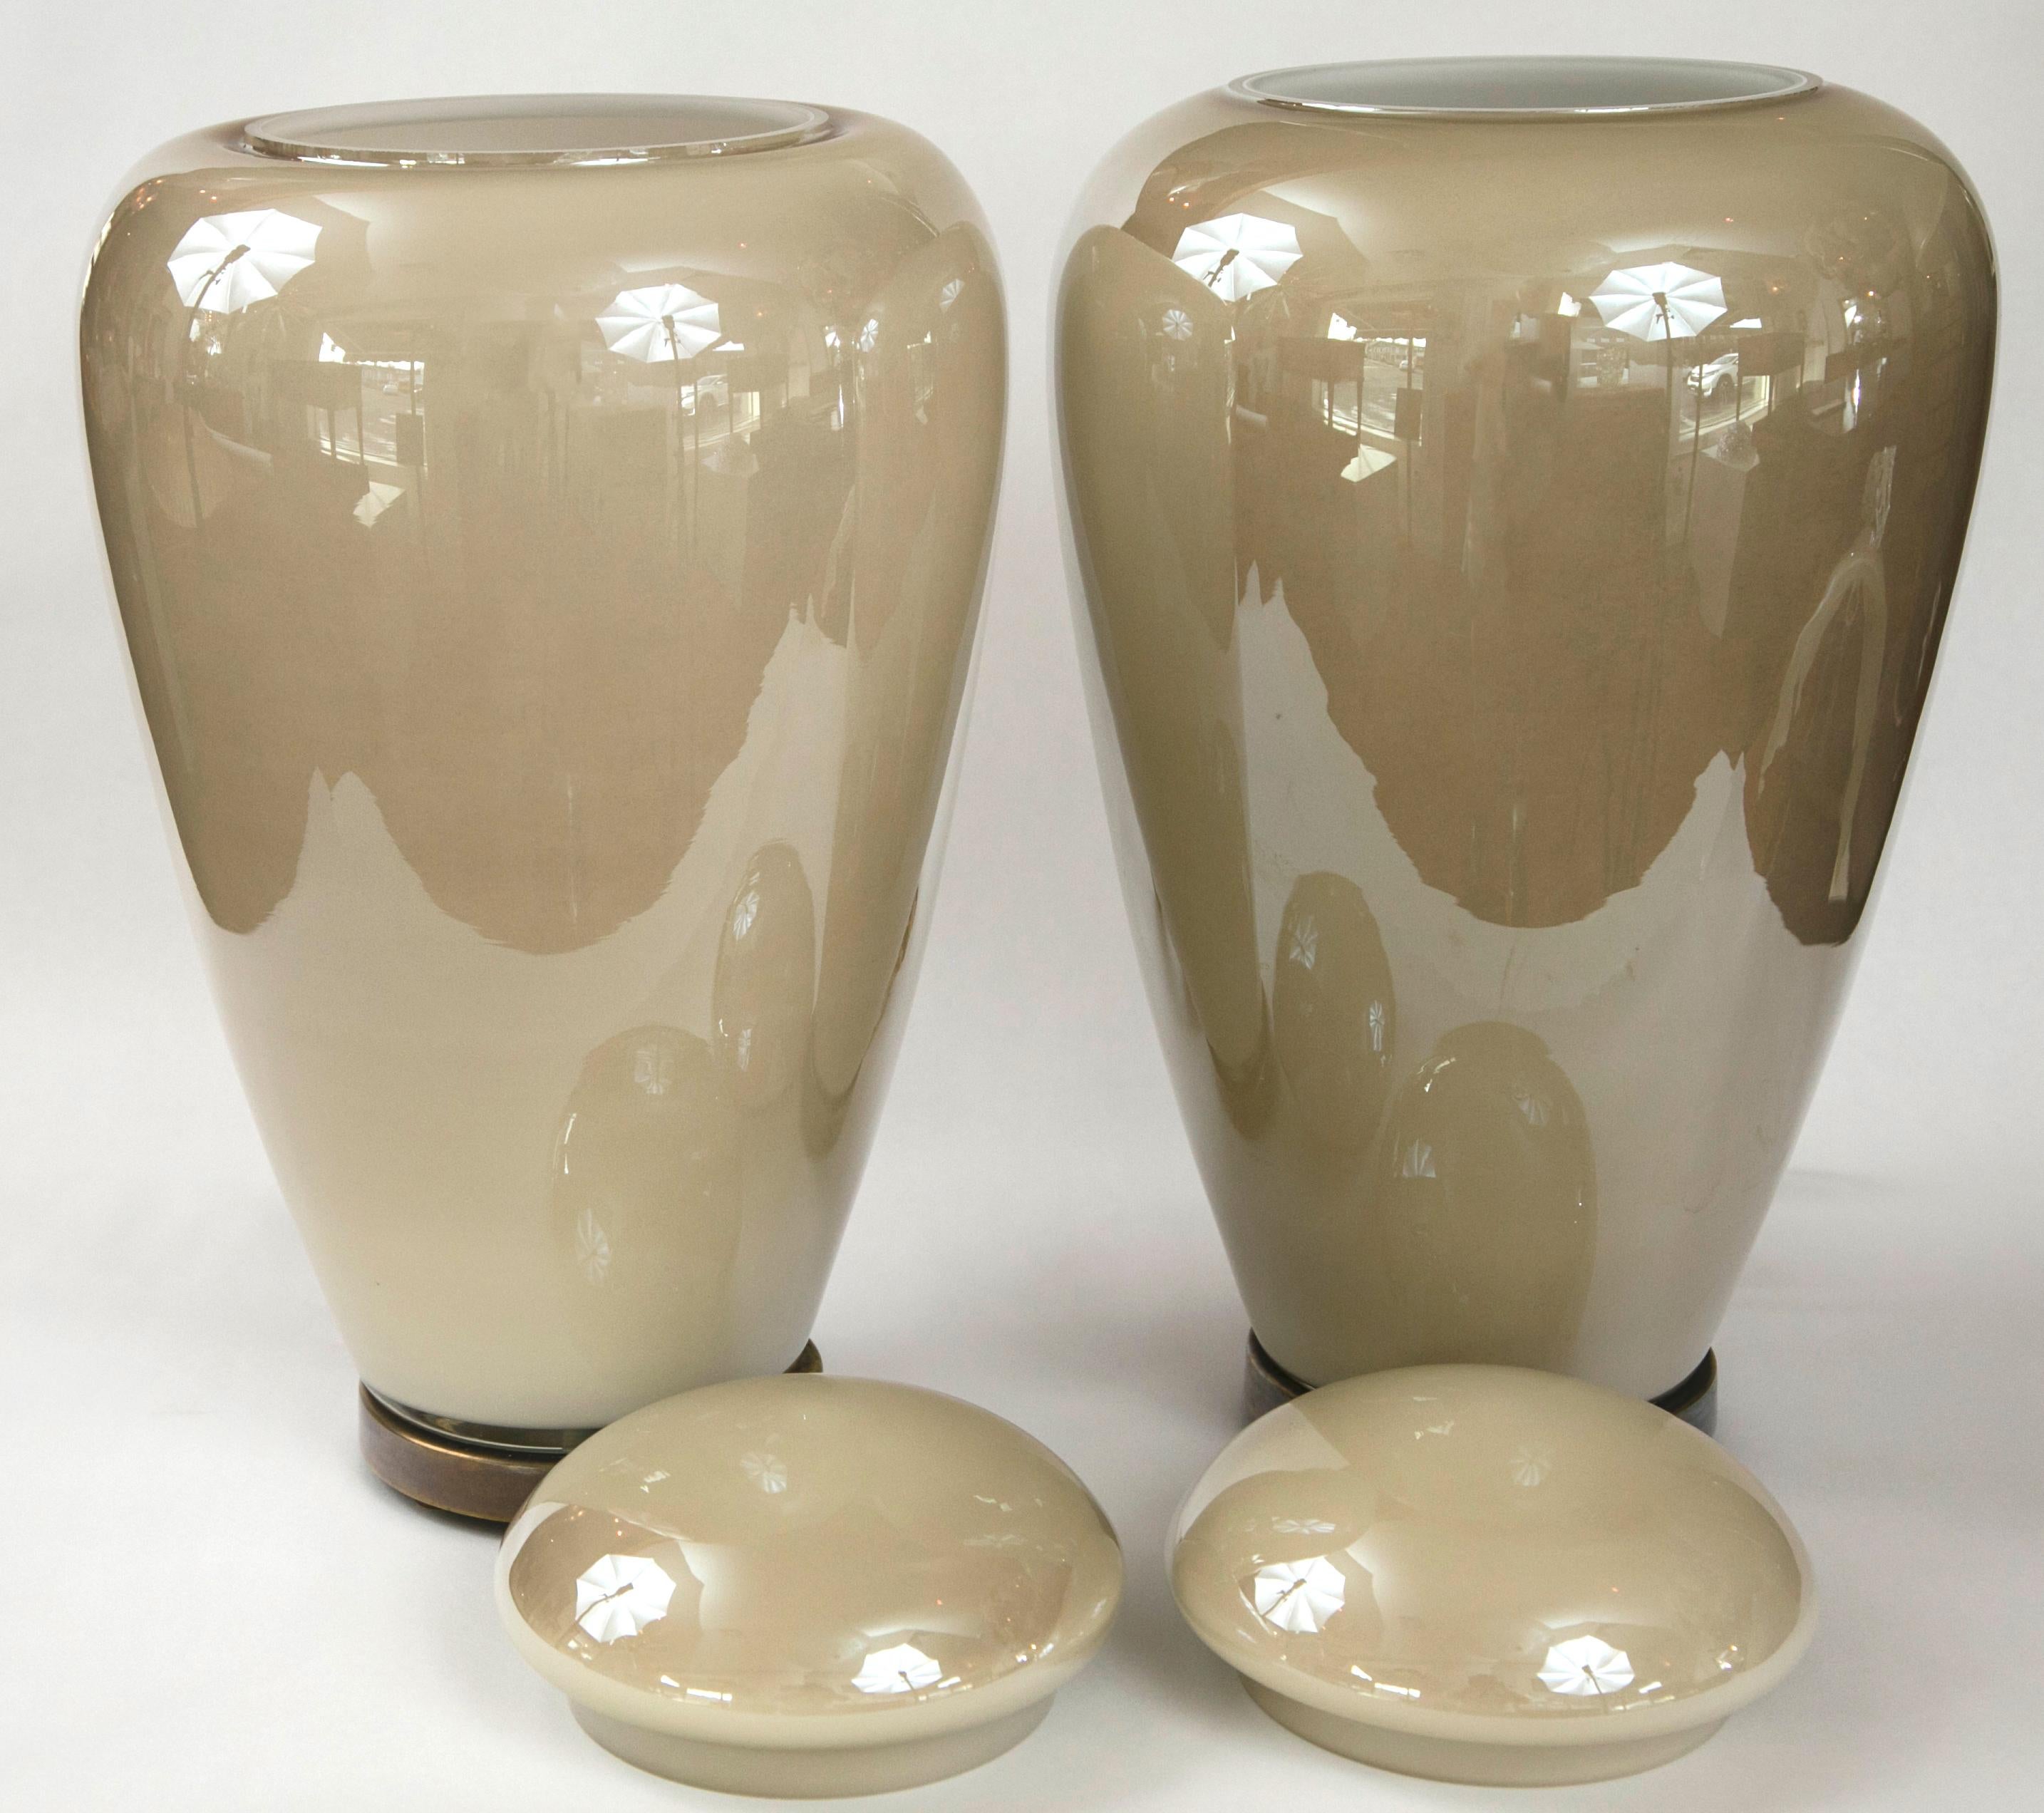 Paar überdachte Vasen mit Messingfüßen in einem seidenweichen creme/taupefarbenen Ton
beleuchtet mit einer Steckdose für bis zu 40 Watt - für einen tollen Effekt!
Herkunft: Venedig, Italien
Abmessungen des Glases:
15 1/2